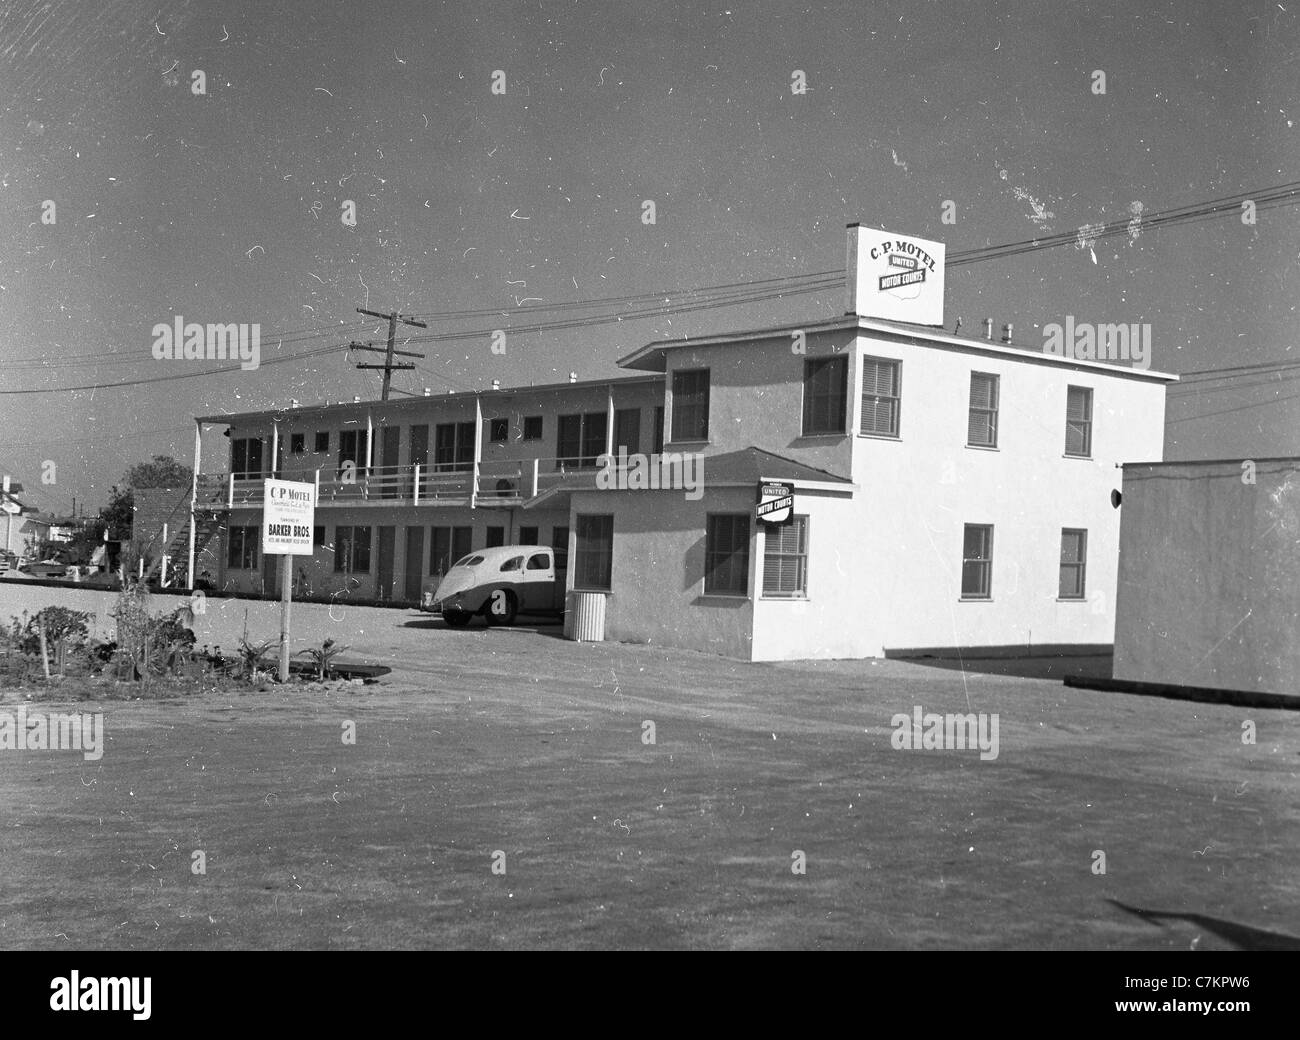 am Straßenrand Motel zweistöckigen 1930er Jahre südwestlichen Vereinigten Staaten Architektur Reisen Unterkunft Hotel C.P. Stockfoto